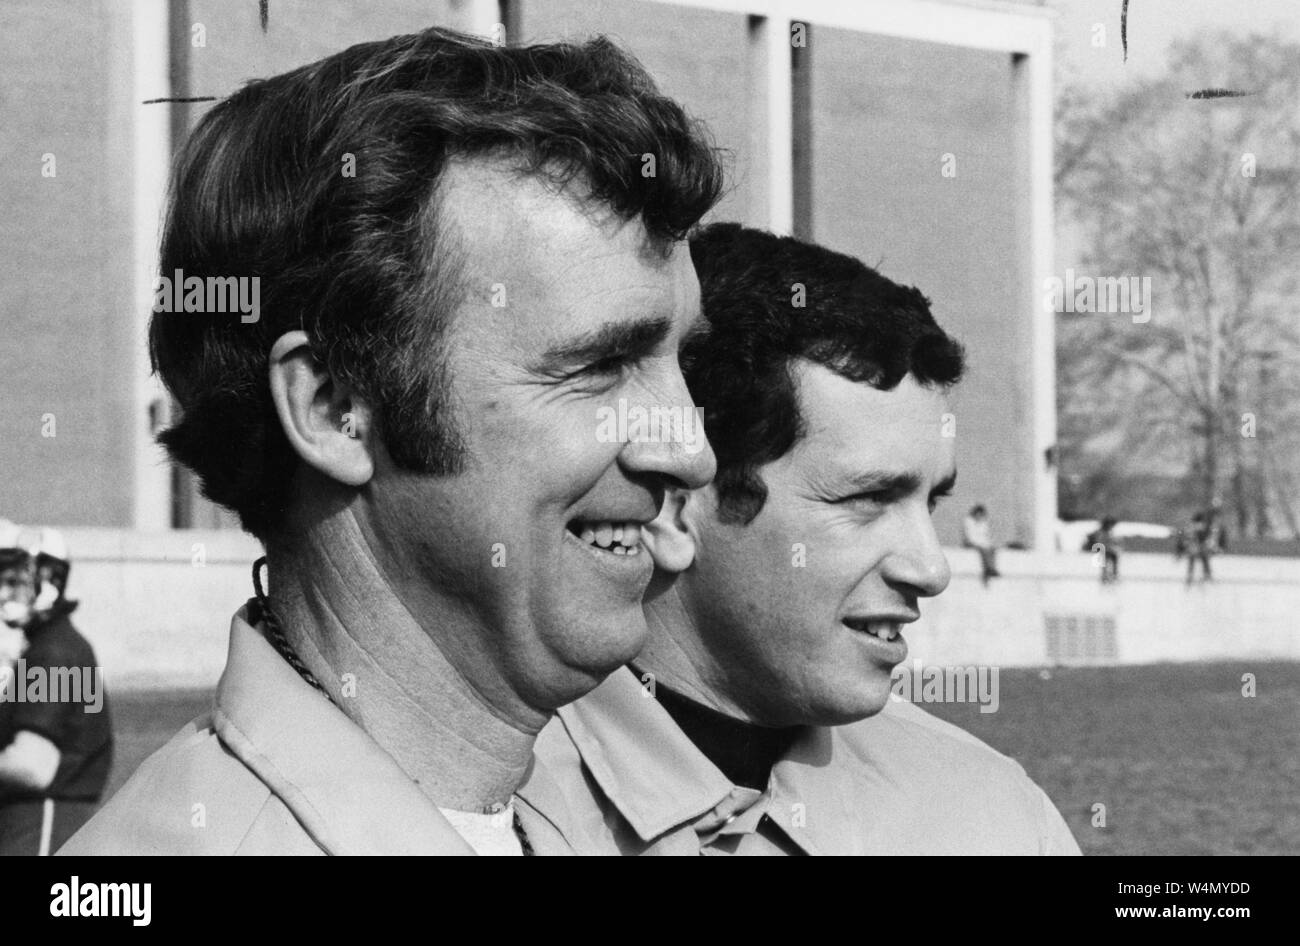 (Von links nach rechts) ein Winkel in der Nähe der Johns Hopkins Lacrosse Regisseur, Bob Scott, und lacrosse Trainer, Henry Ciccarone, wie Sie, während Sie zu den Spielen ihrer Mannschaft, 1974 Lächeln. Von der historischen Fotos Sammlung, Baltimore, Maryland. () Stockfoto